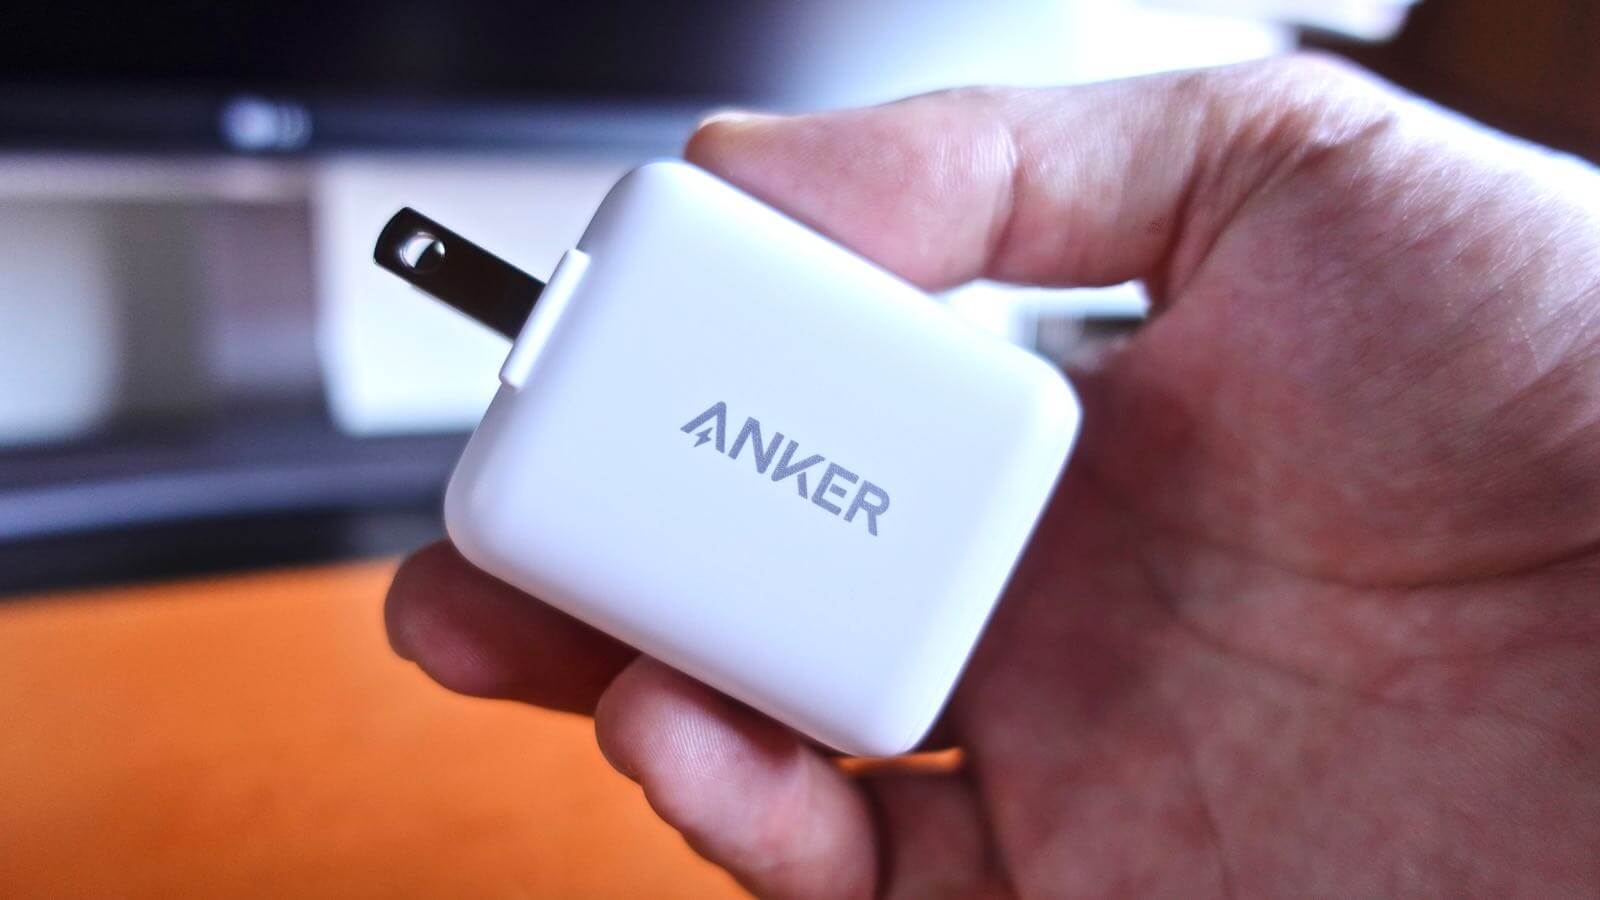 0219 Anker PowerPort III mini review 01